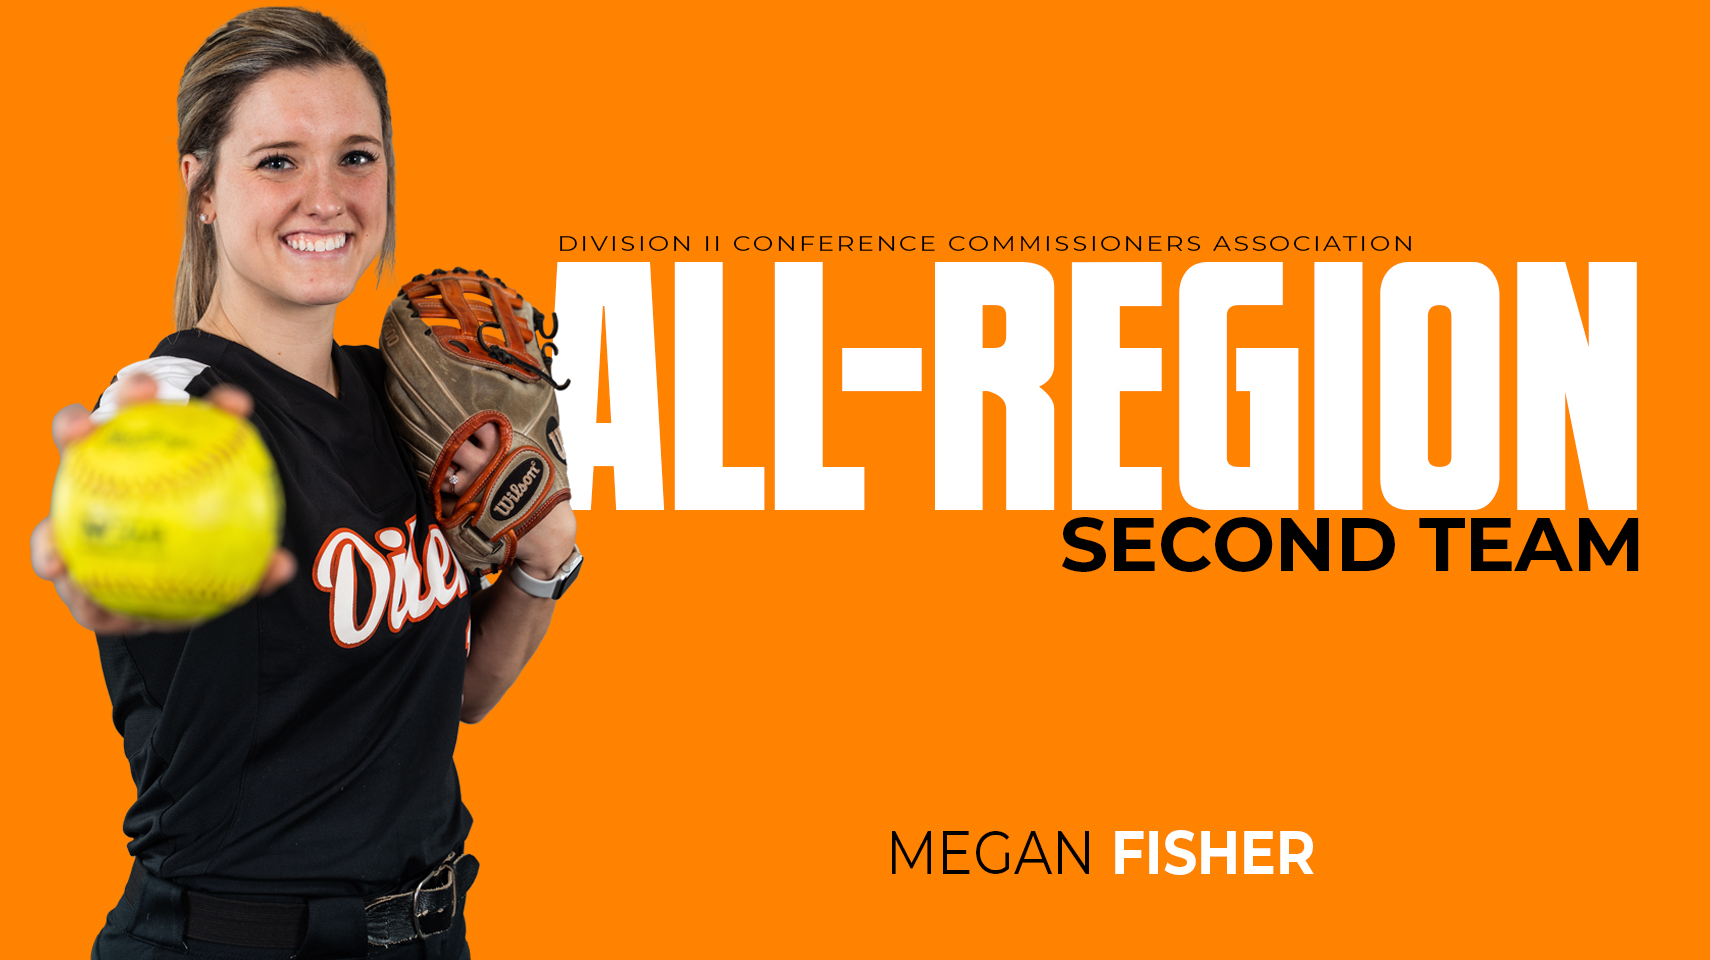 All-Midwest Region 2021 Megan Fisher